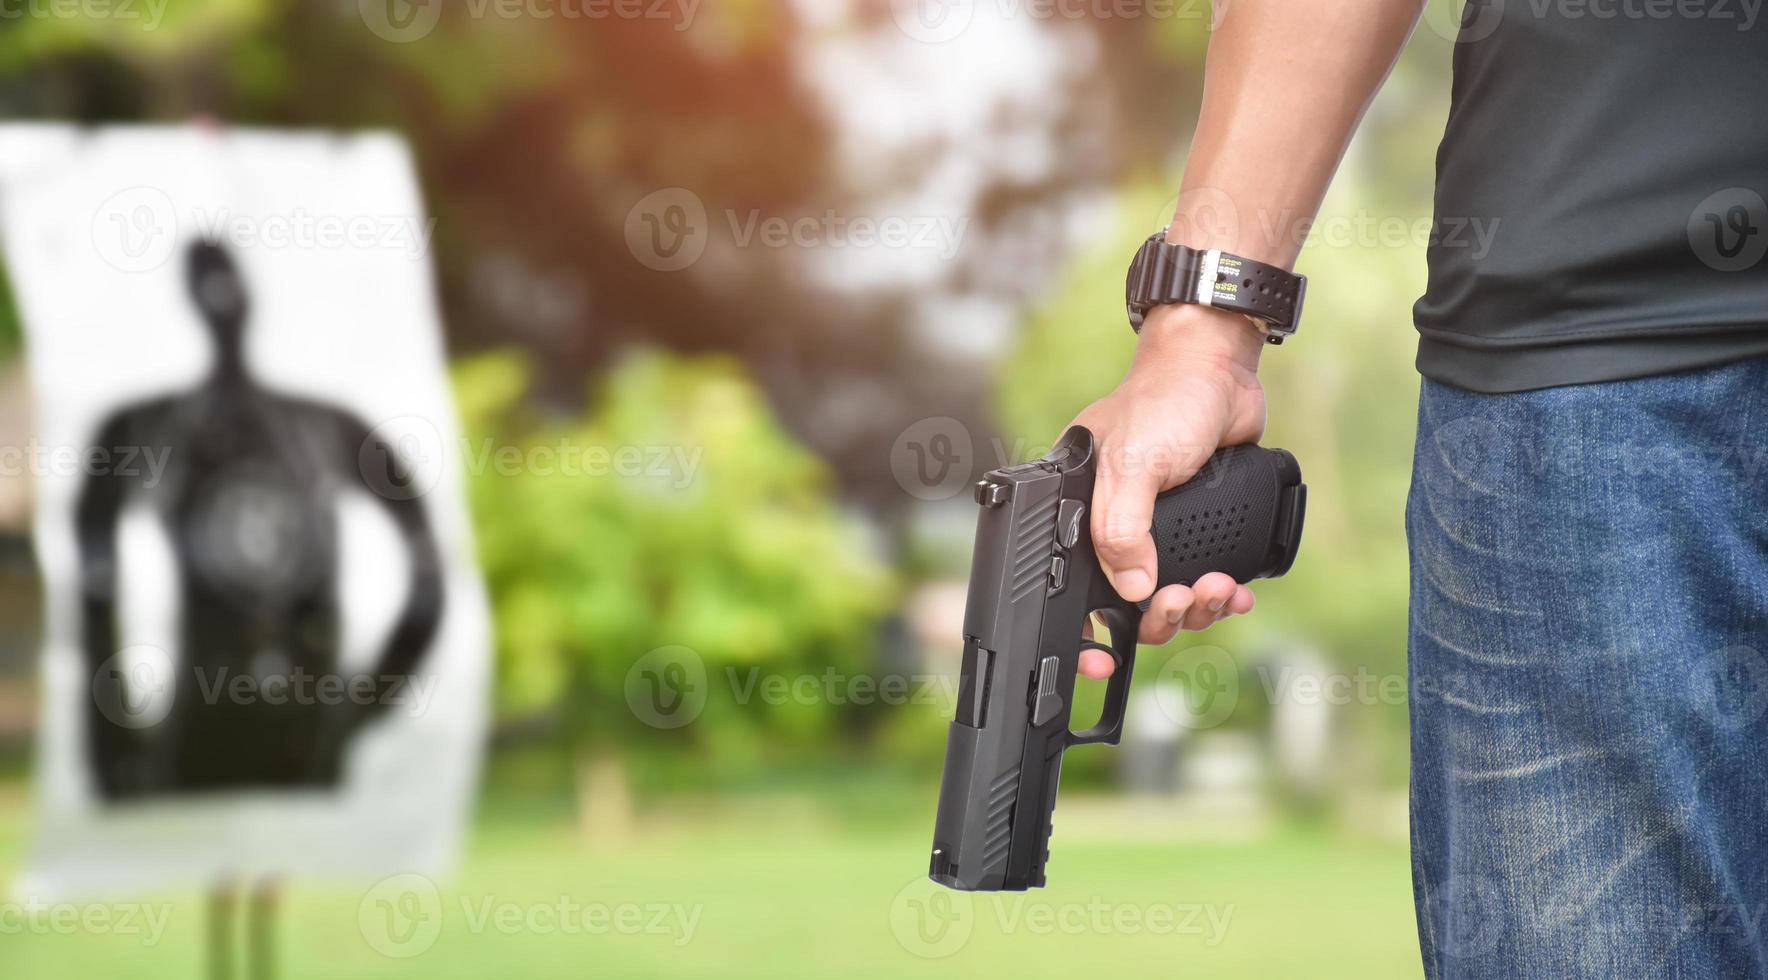 9 mm automatisch pistool in de rechterhand van de schutter, concept voor beveiliging, overval, gangster, lijfwacht over de hele wereld. selectieve focus op pistool. foto